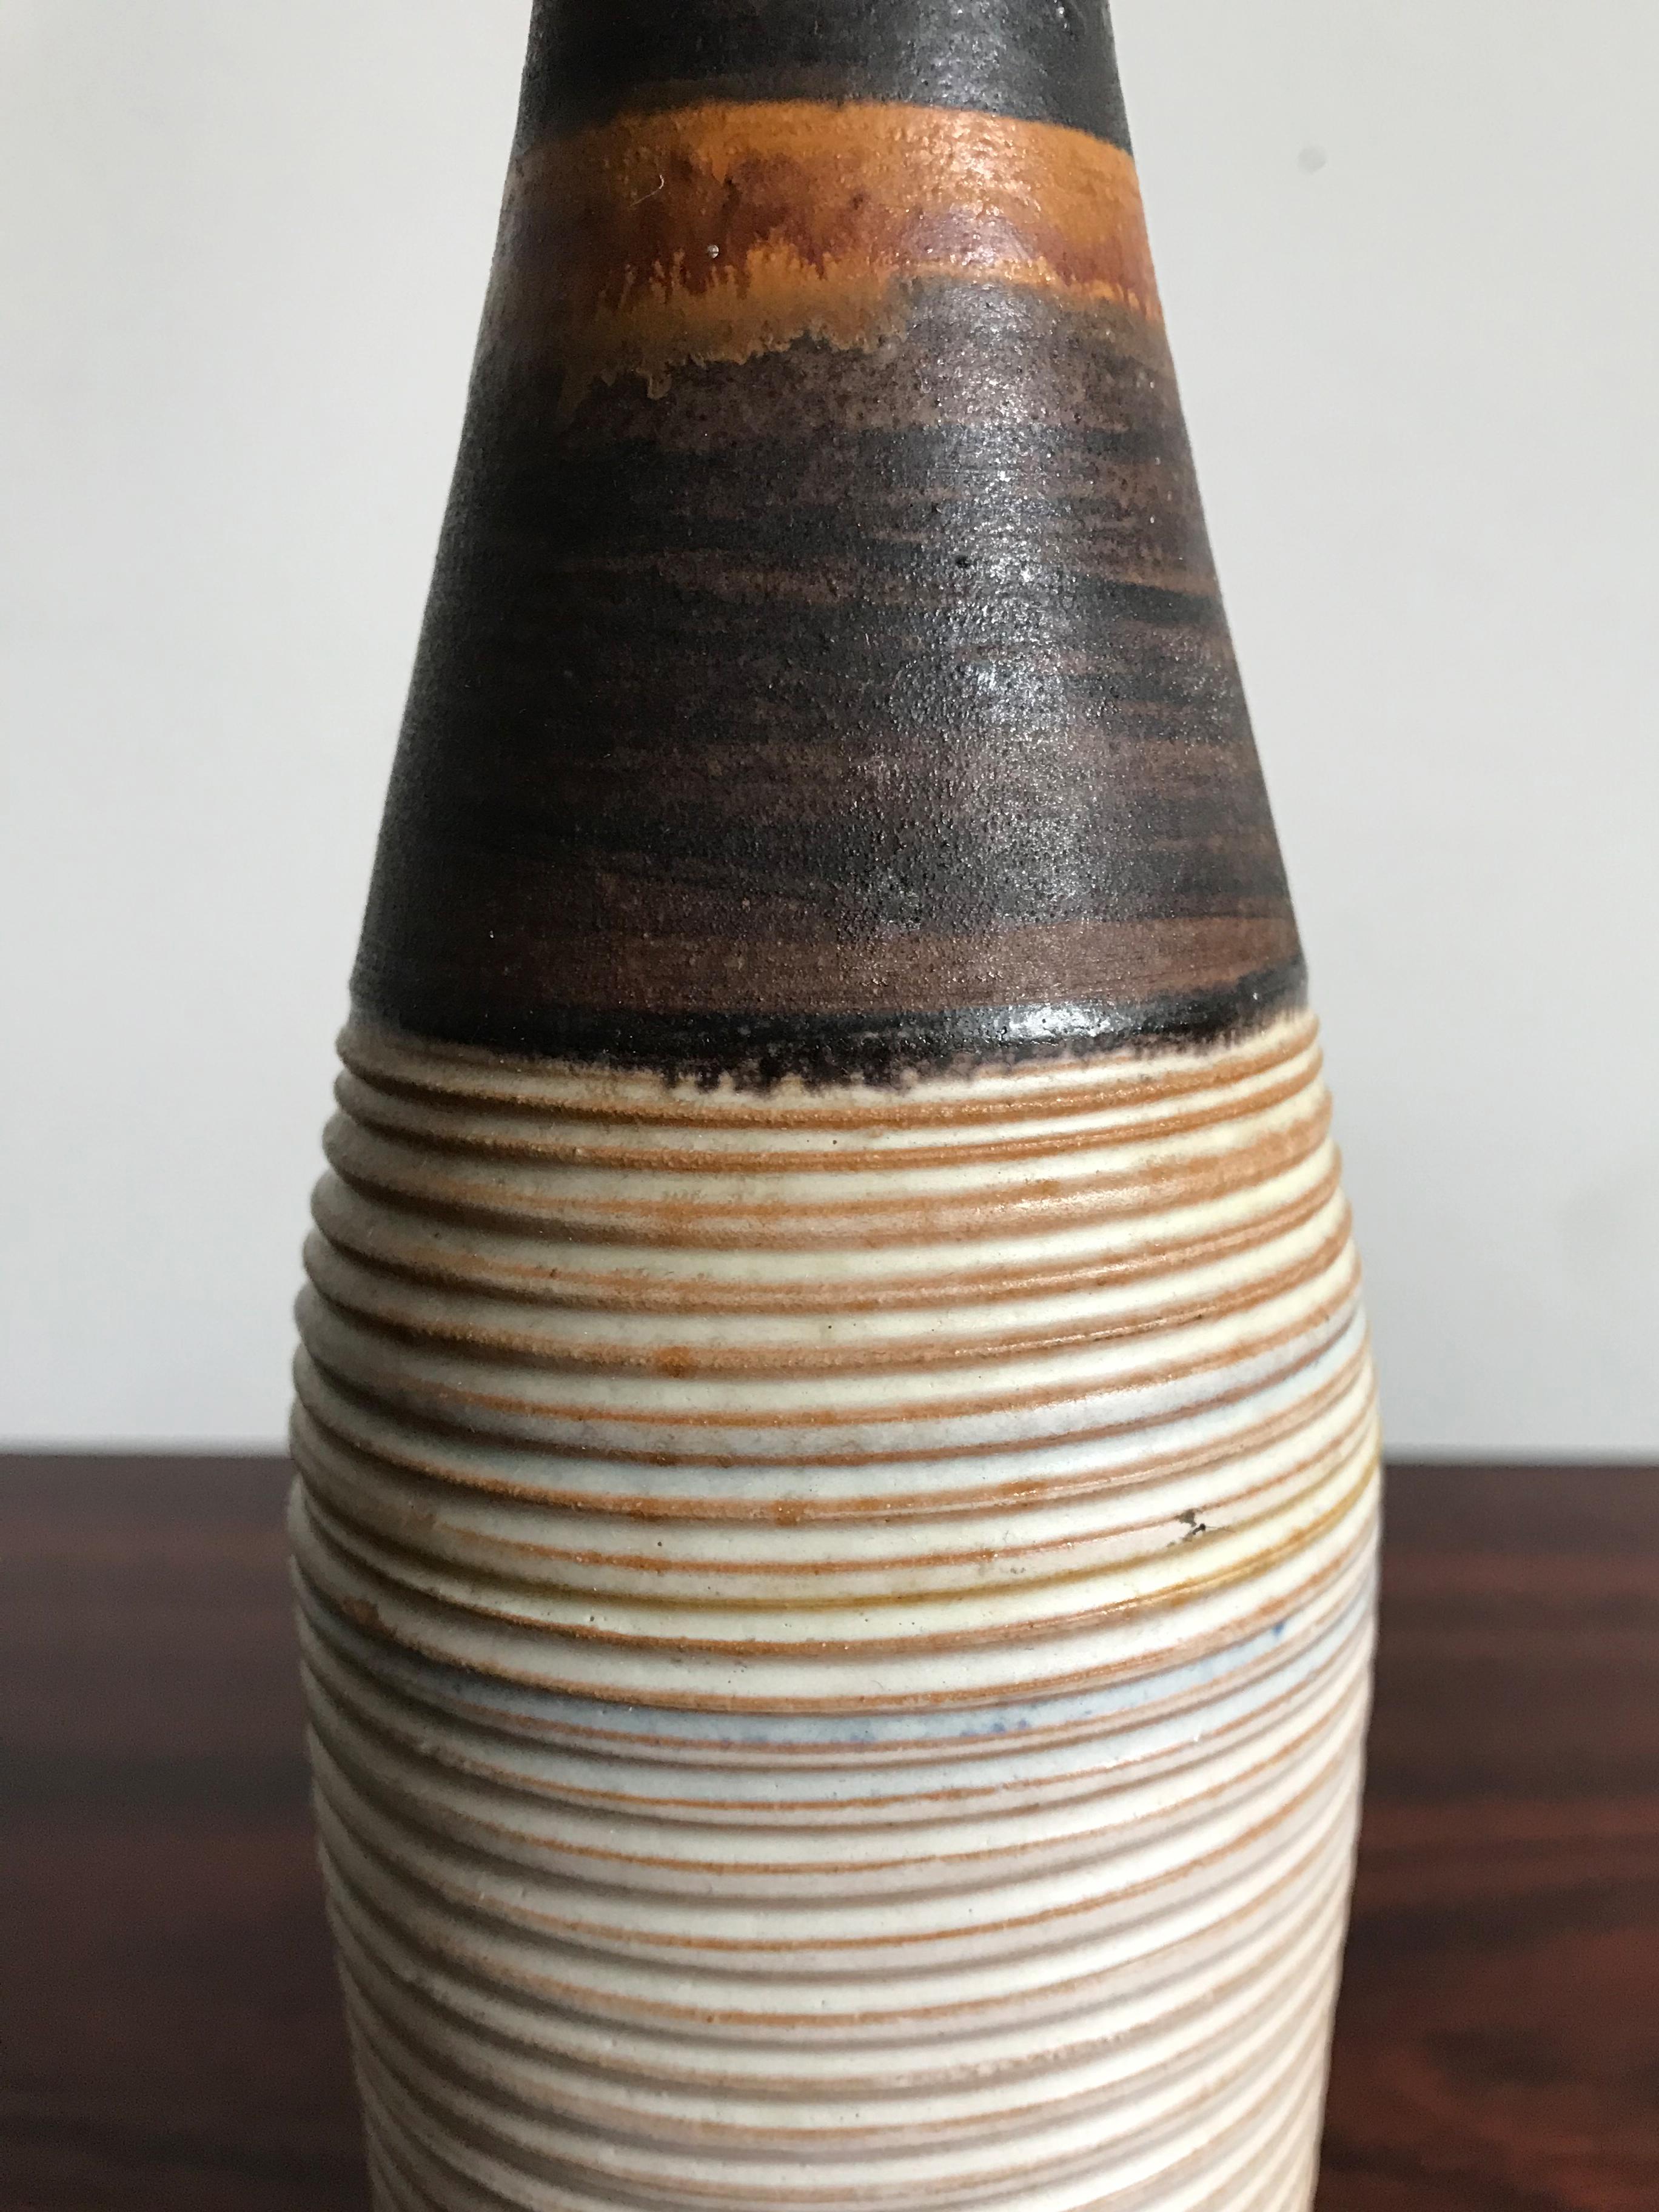 Ivo Sassi Mid-Century Modern Design Italian Ceramic Vases Bottles Set, 1950s For Sale 9